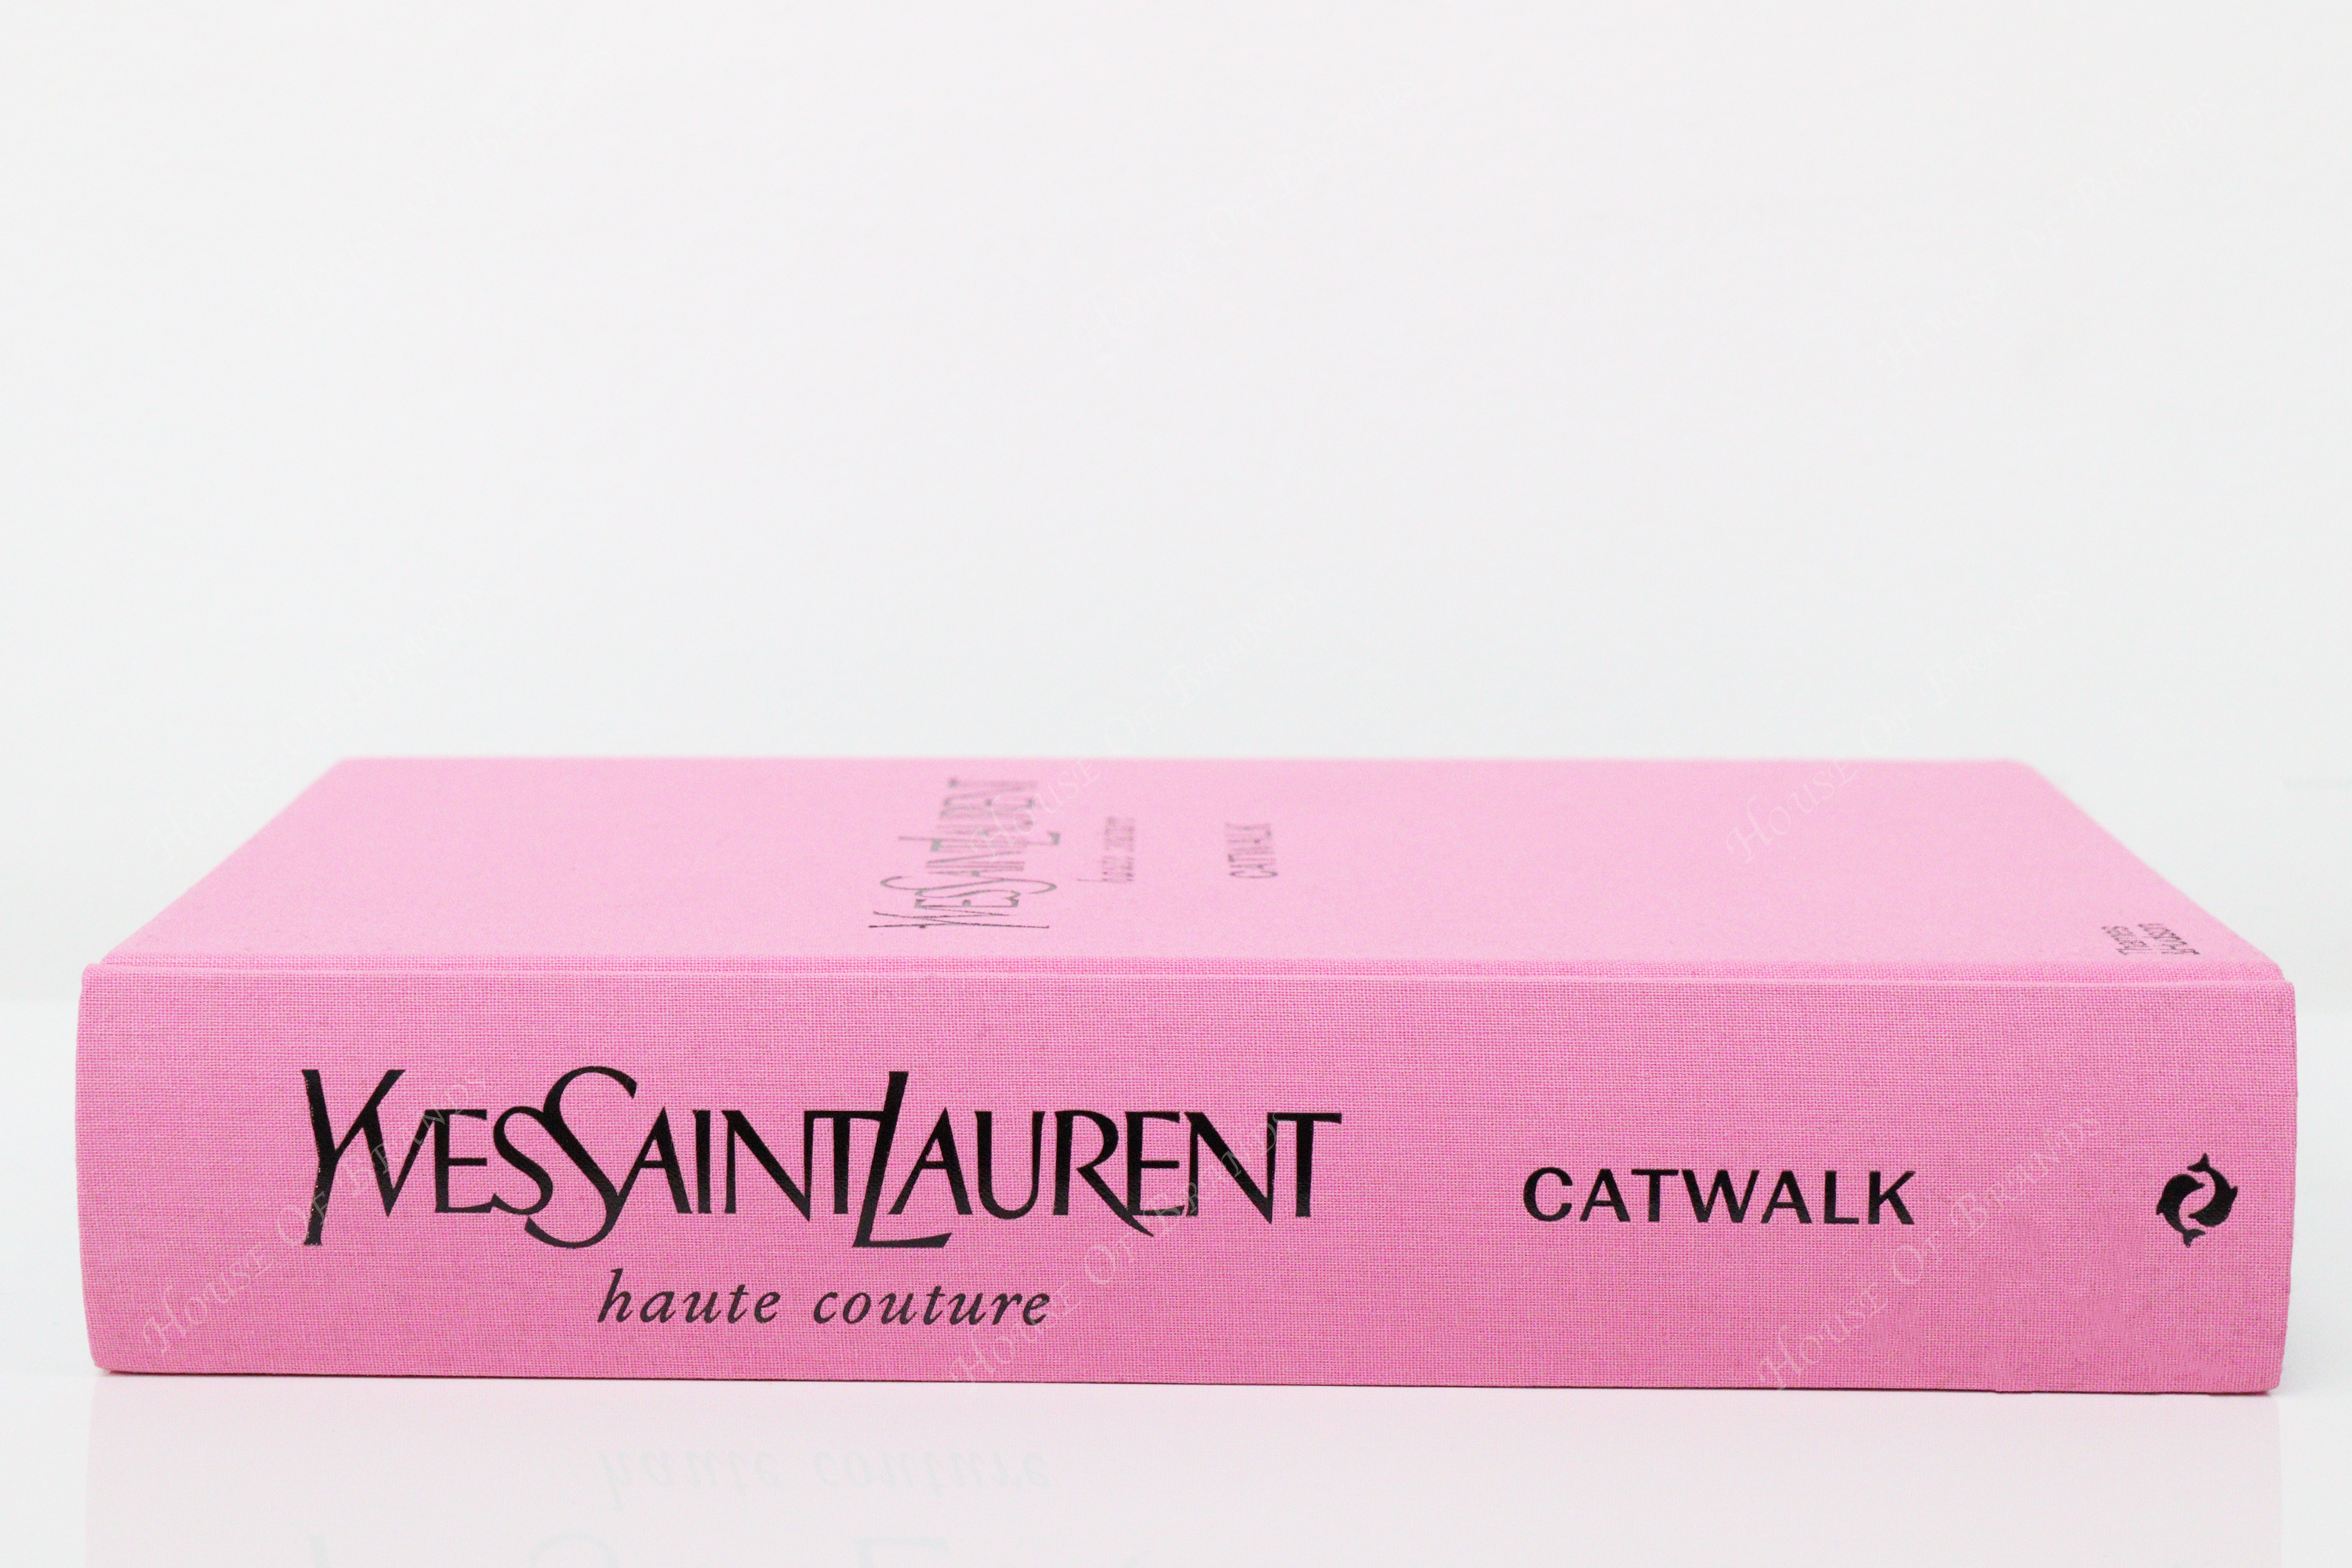 Thames & Hudson - 'Yves Saint Laurent Catwalk', the latest